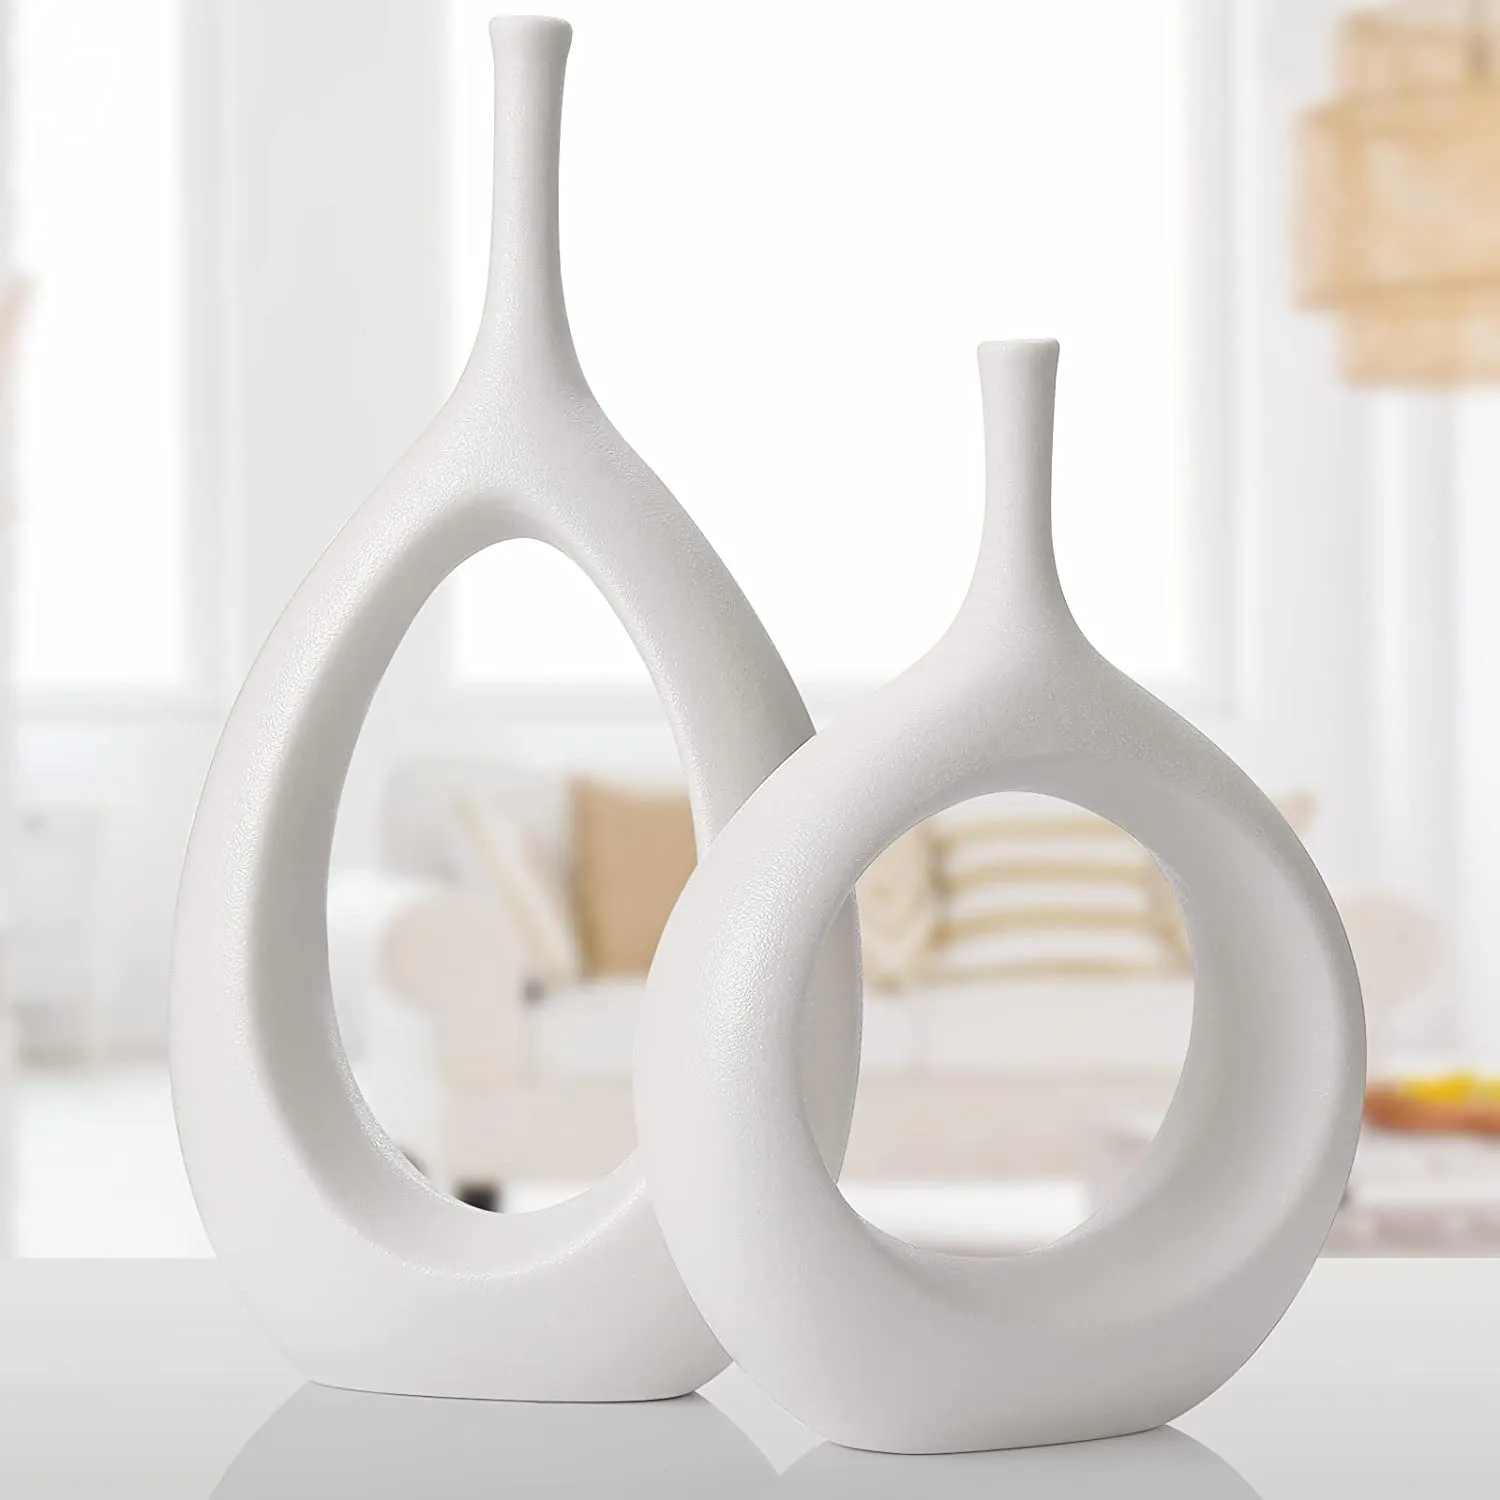 Белые керамические полые вазы набор из 2 декора современного декоративного ваза центральный для свадебного обеда столик вечеринка гостиная офисная спальня, домохозяйство